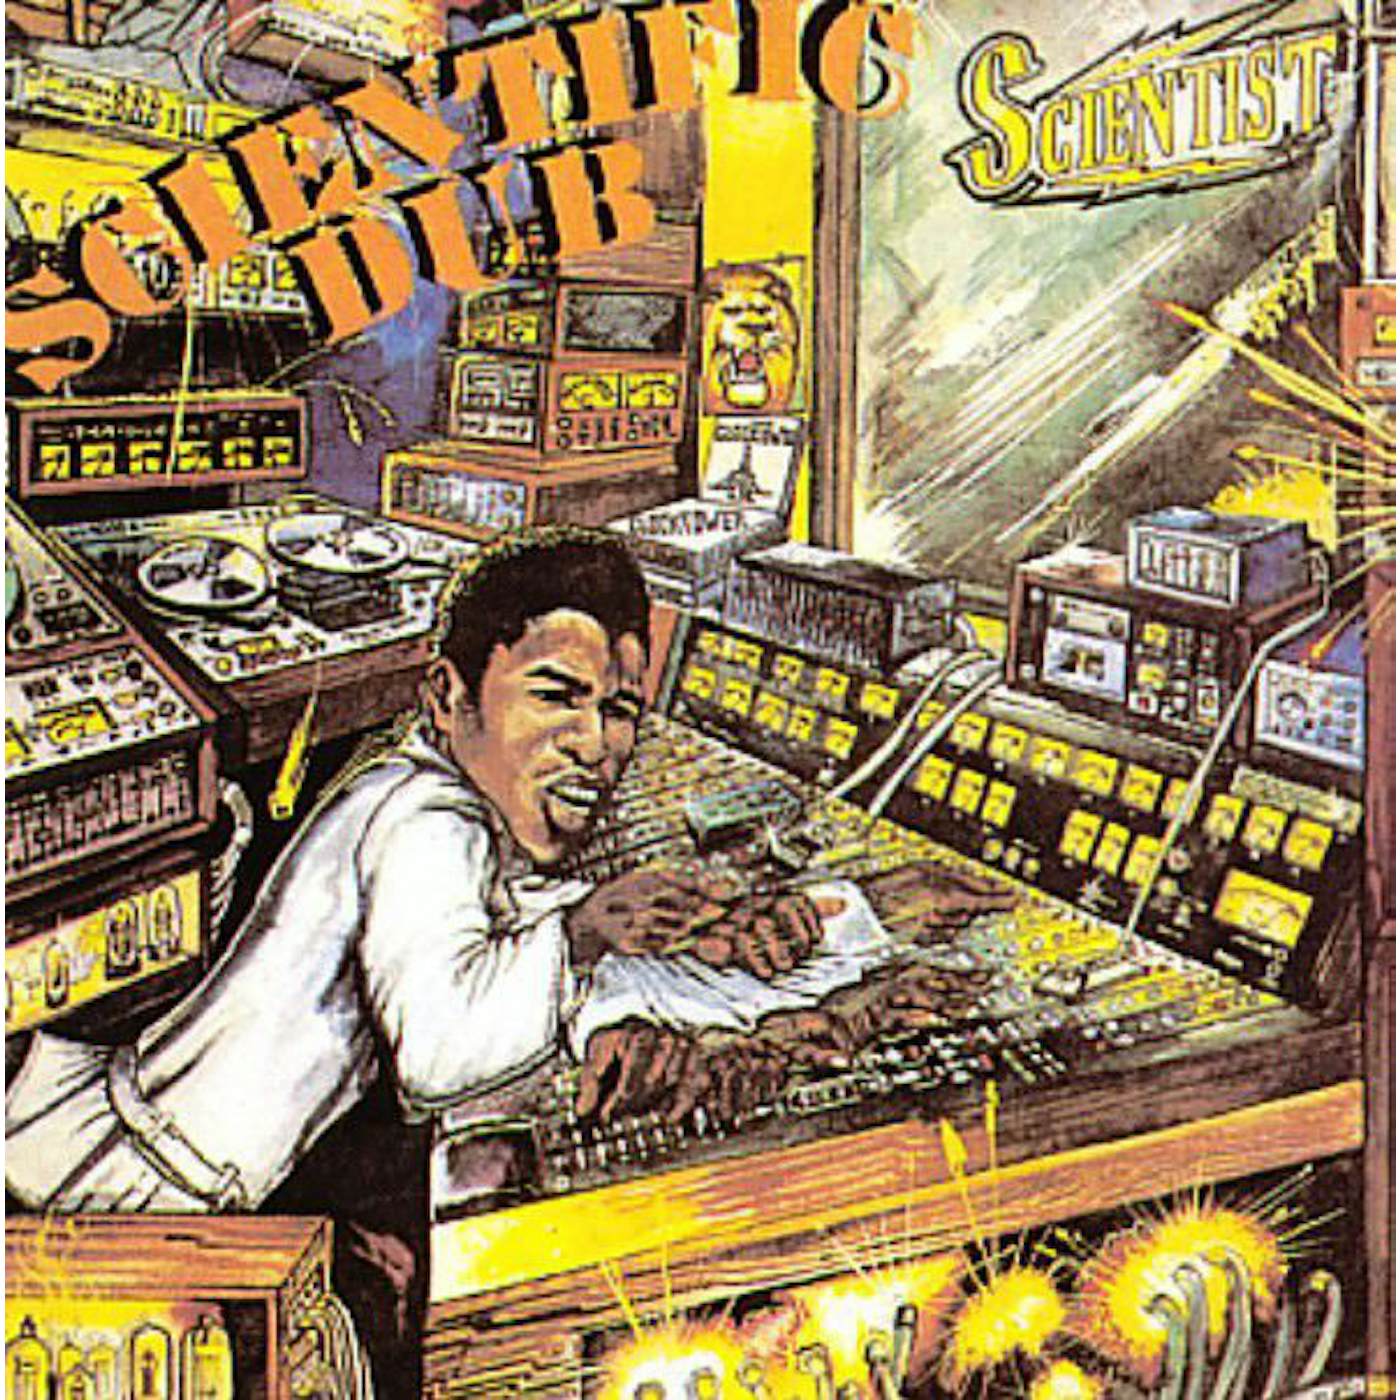 Scientist SCIENTIFIC DUB CD